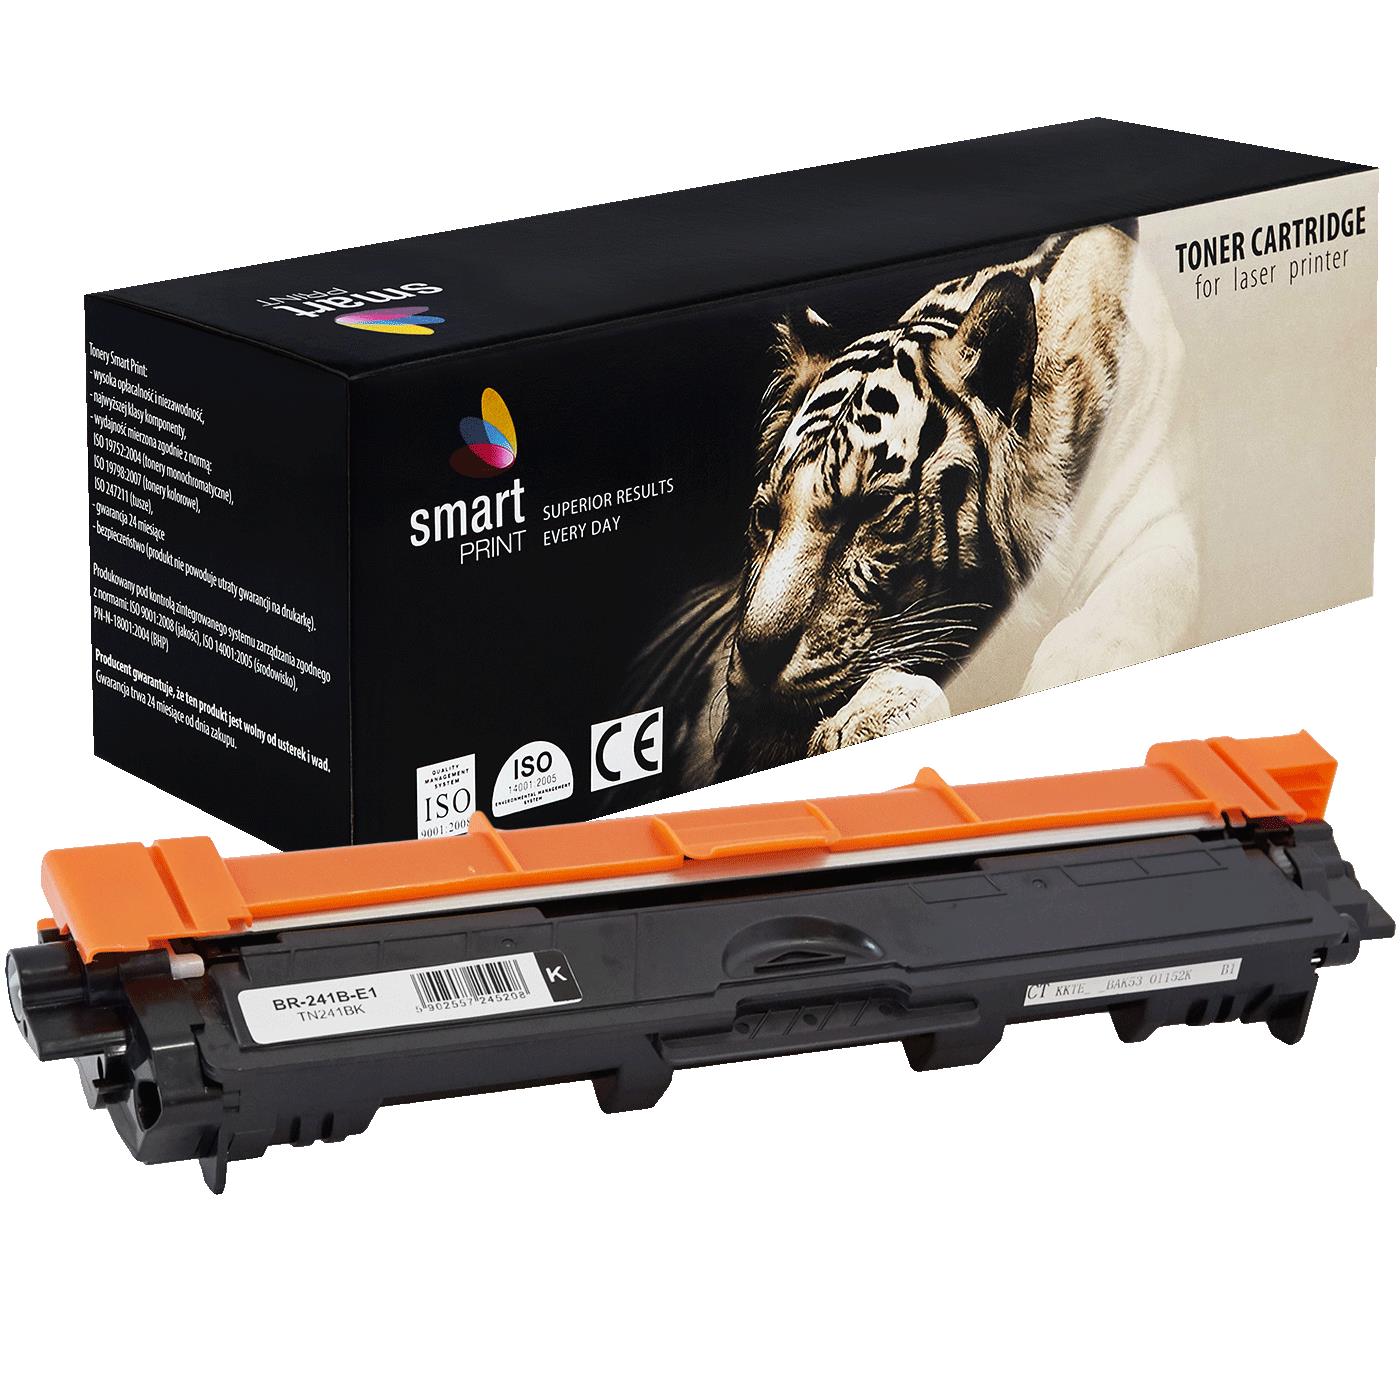 съвместима тонер касета за принтери и печатащи устройства на Brother MFC-9330 CDW Toner BR-241B | TN241BK / TN-241 / TN245. Ниски цени, прецизно изпълнение, високо качество.